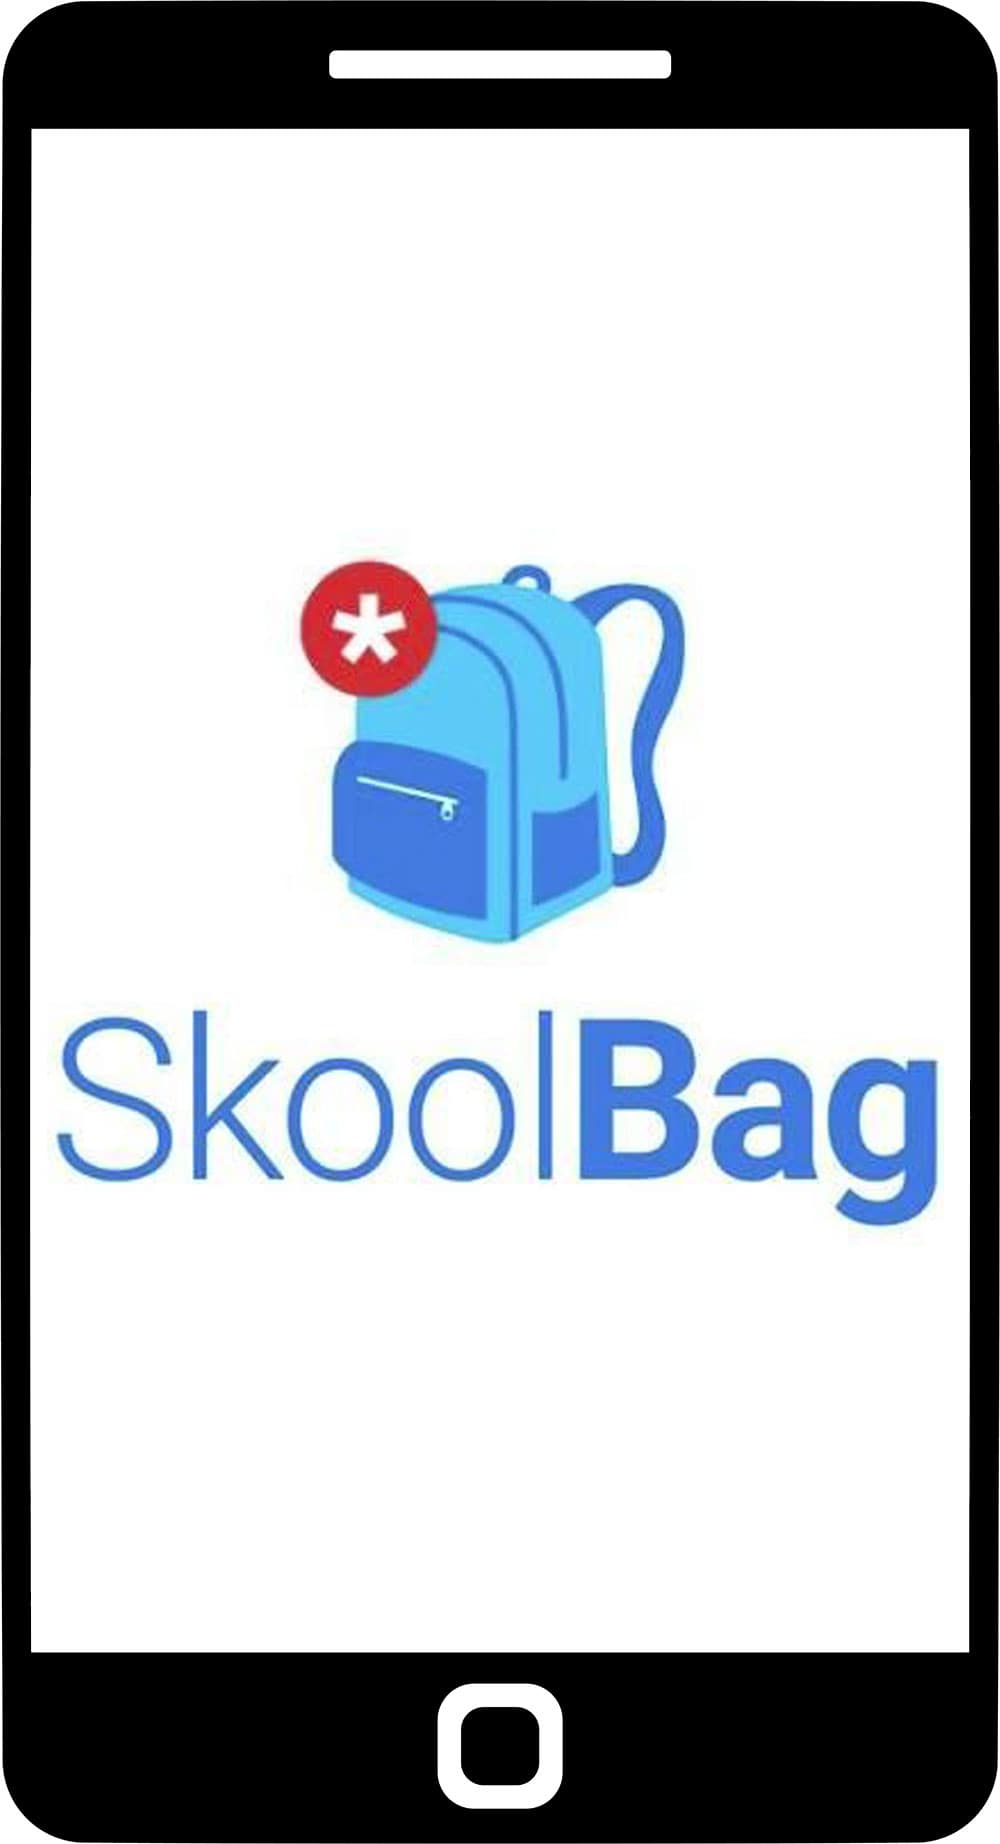 SkoolBag mobile app screen